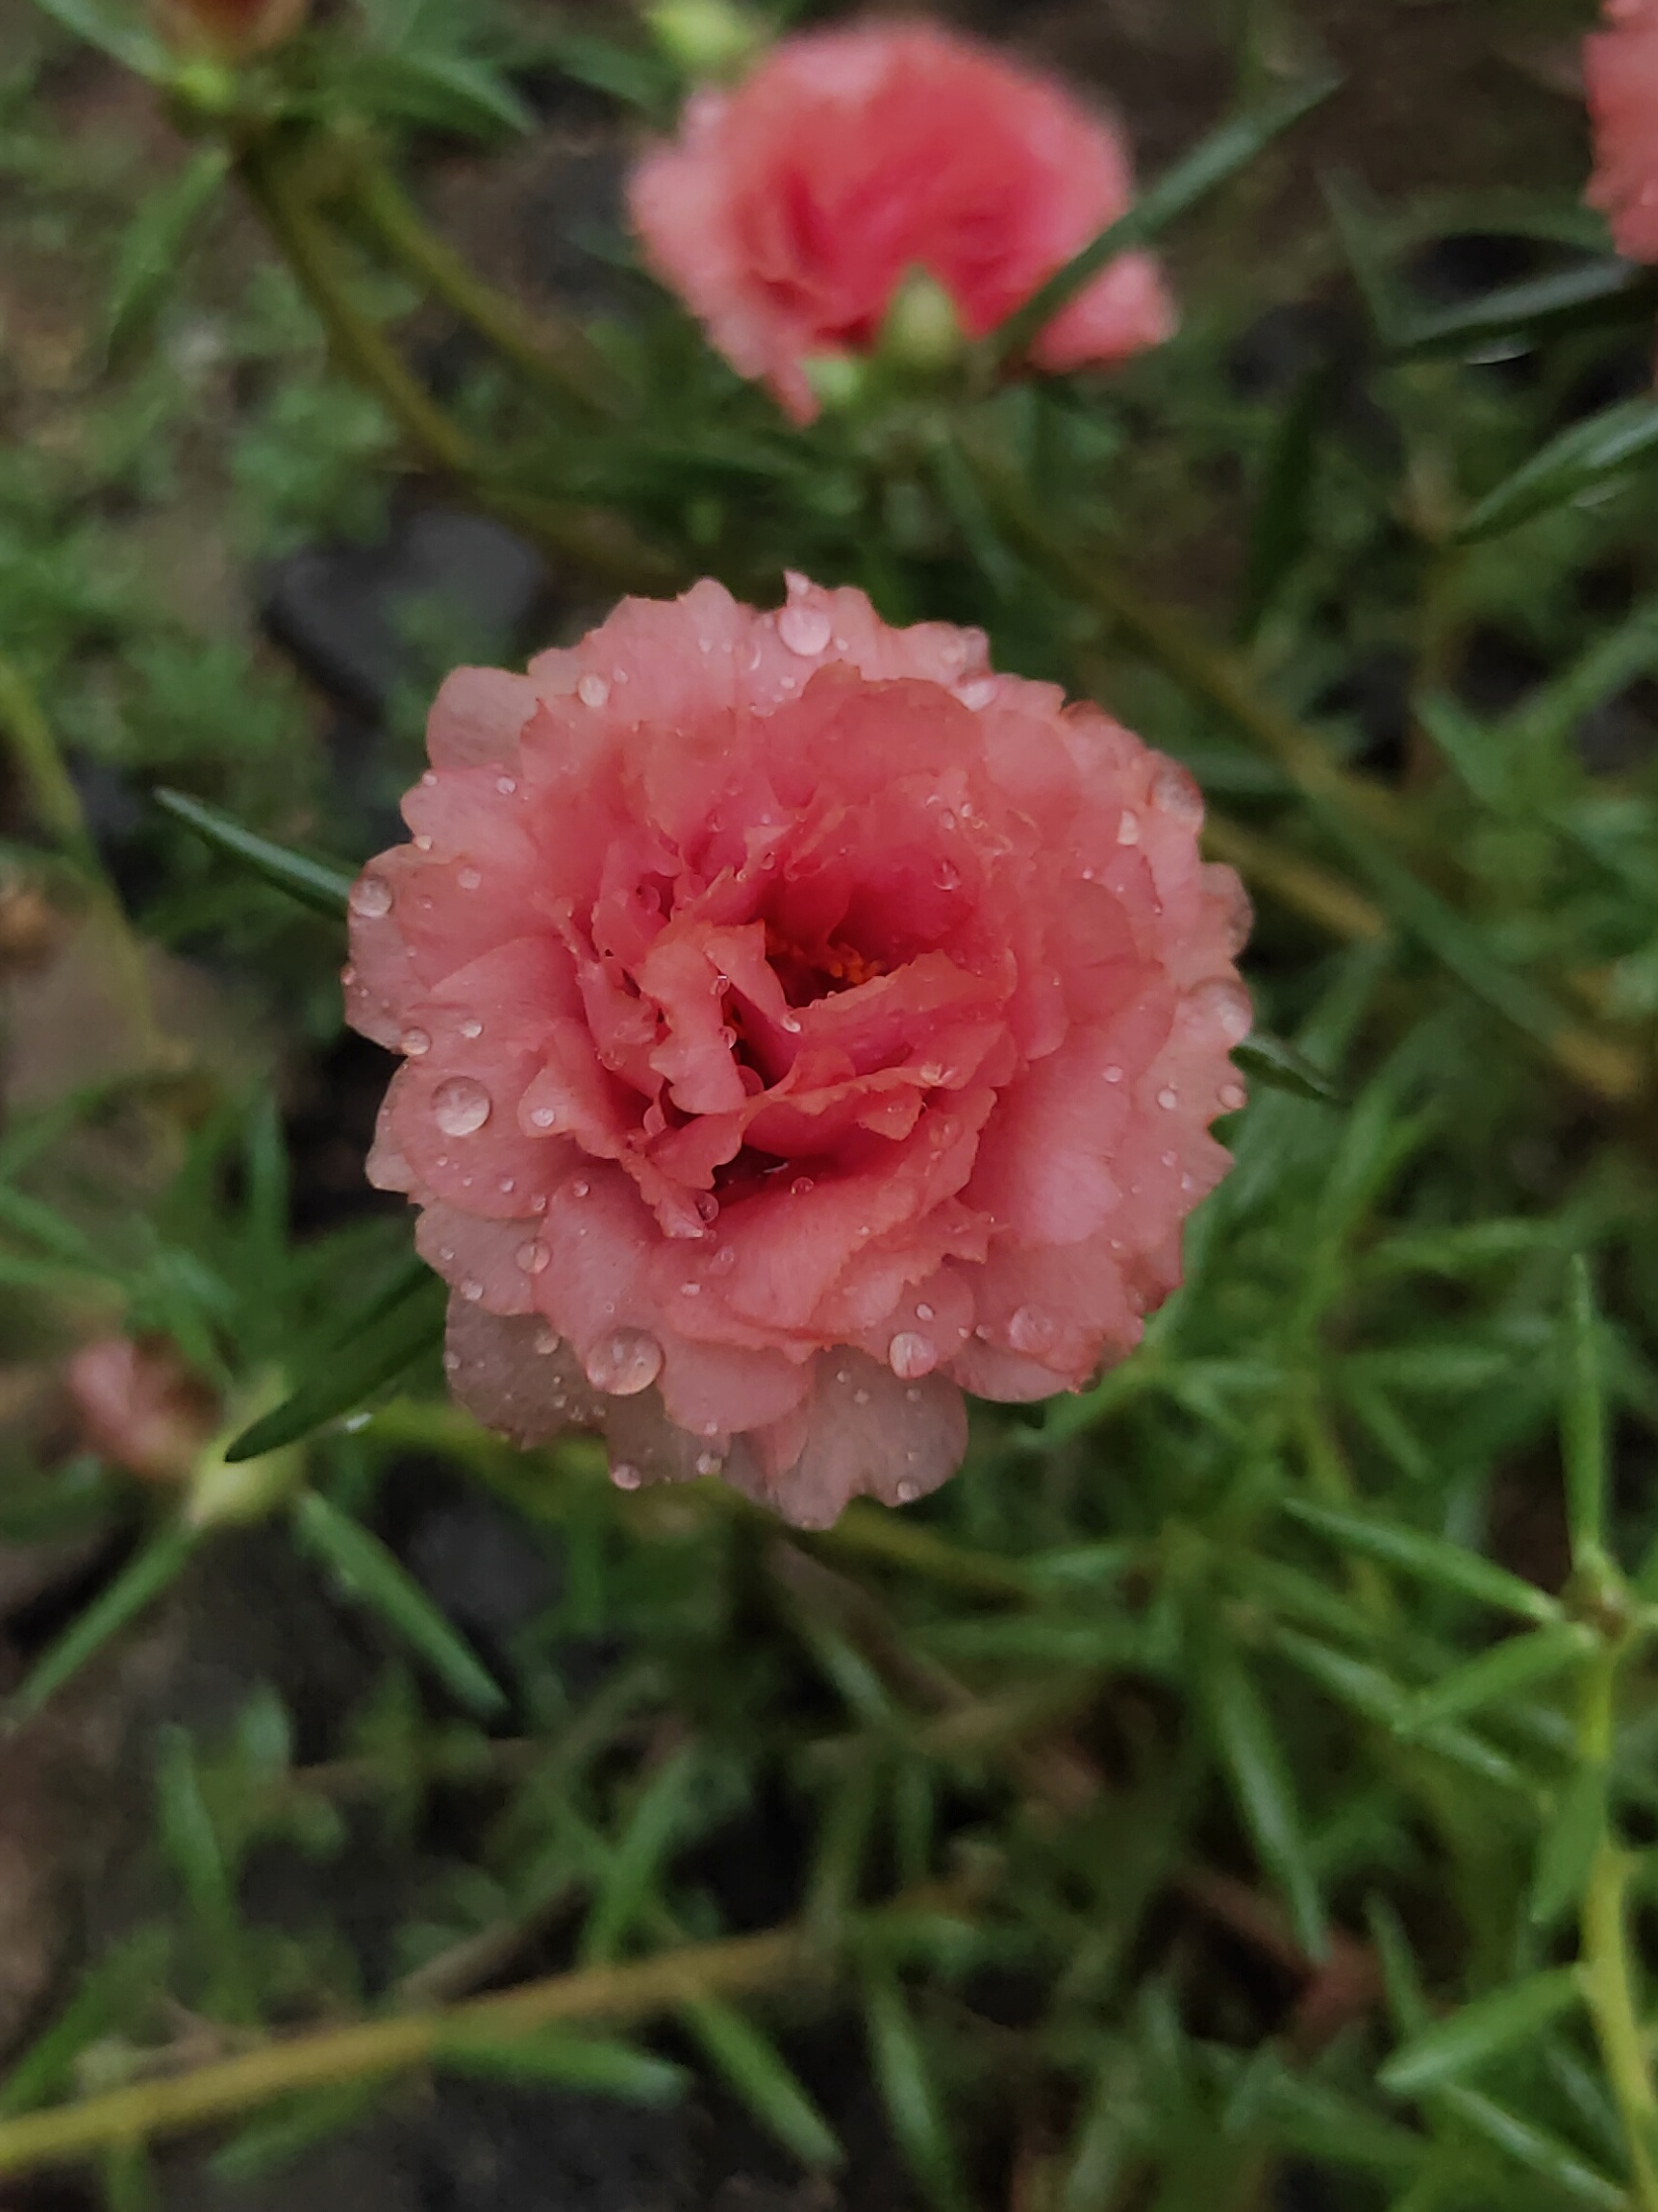 Water drops on Flower